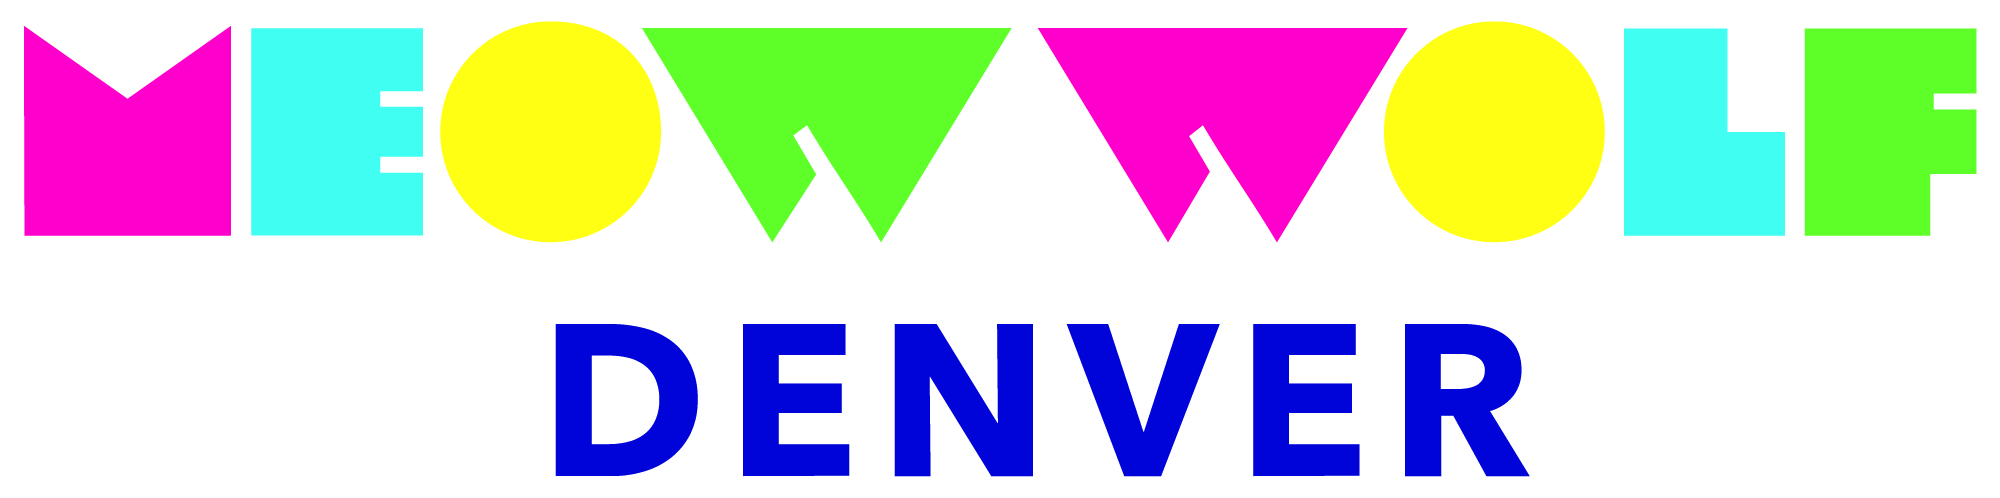 MWDenver Logotype OnWhite CMYK